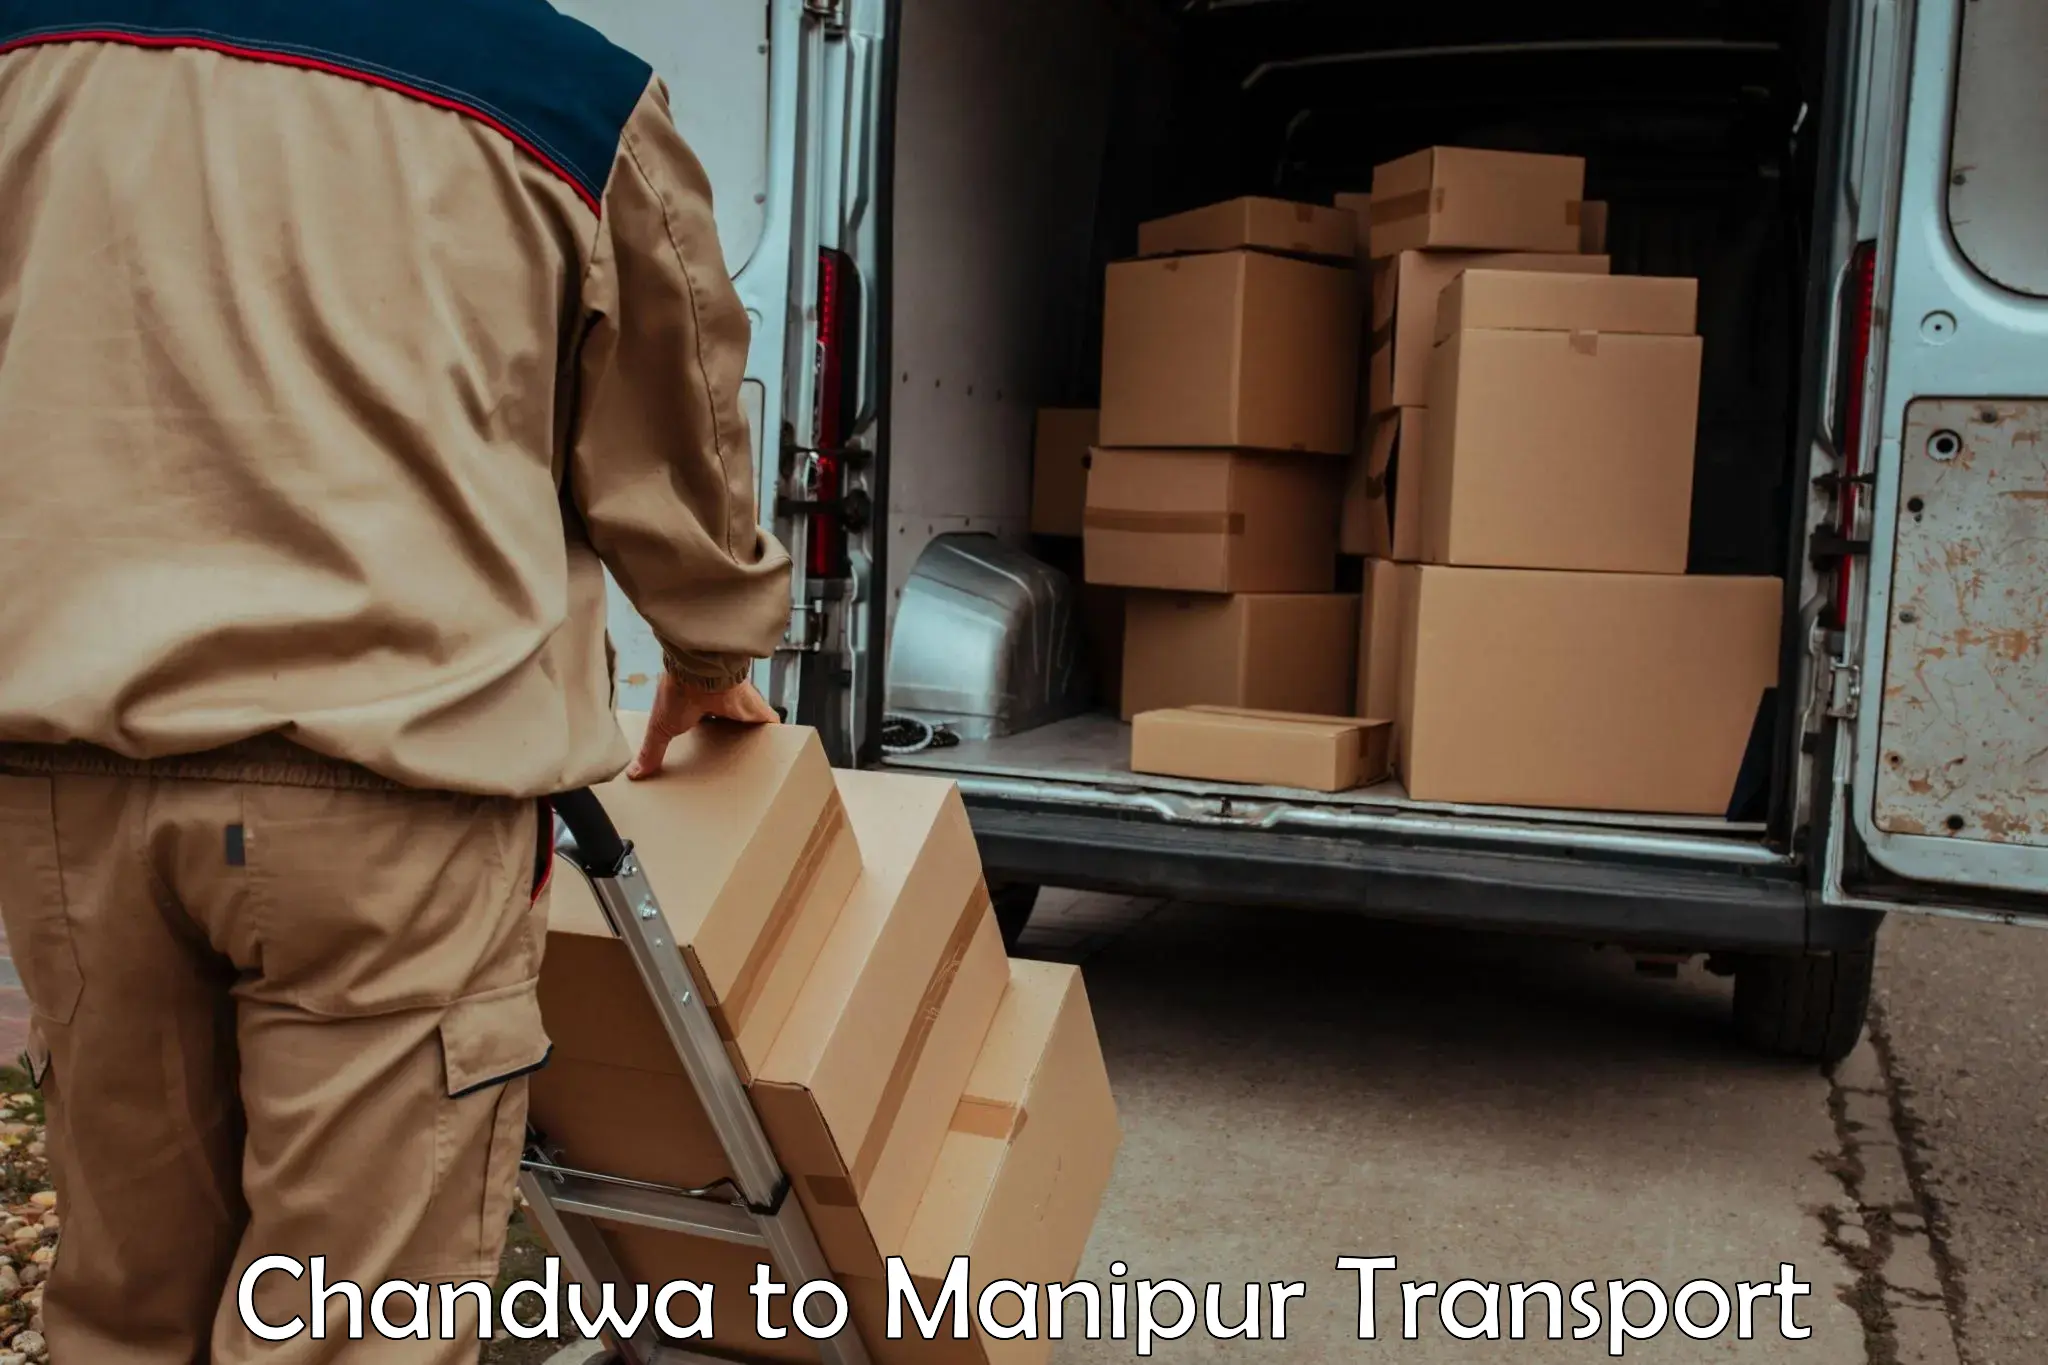 Nationwide transport services Chandwa to Churachandpur